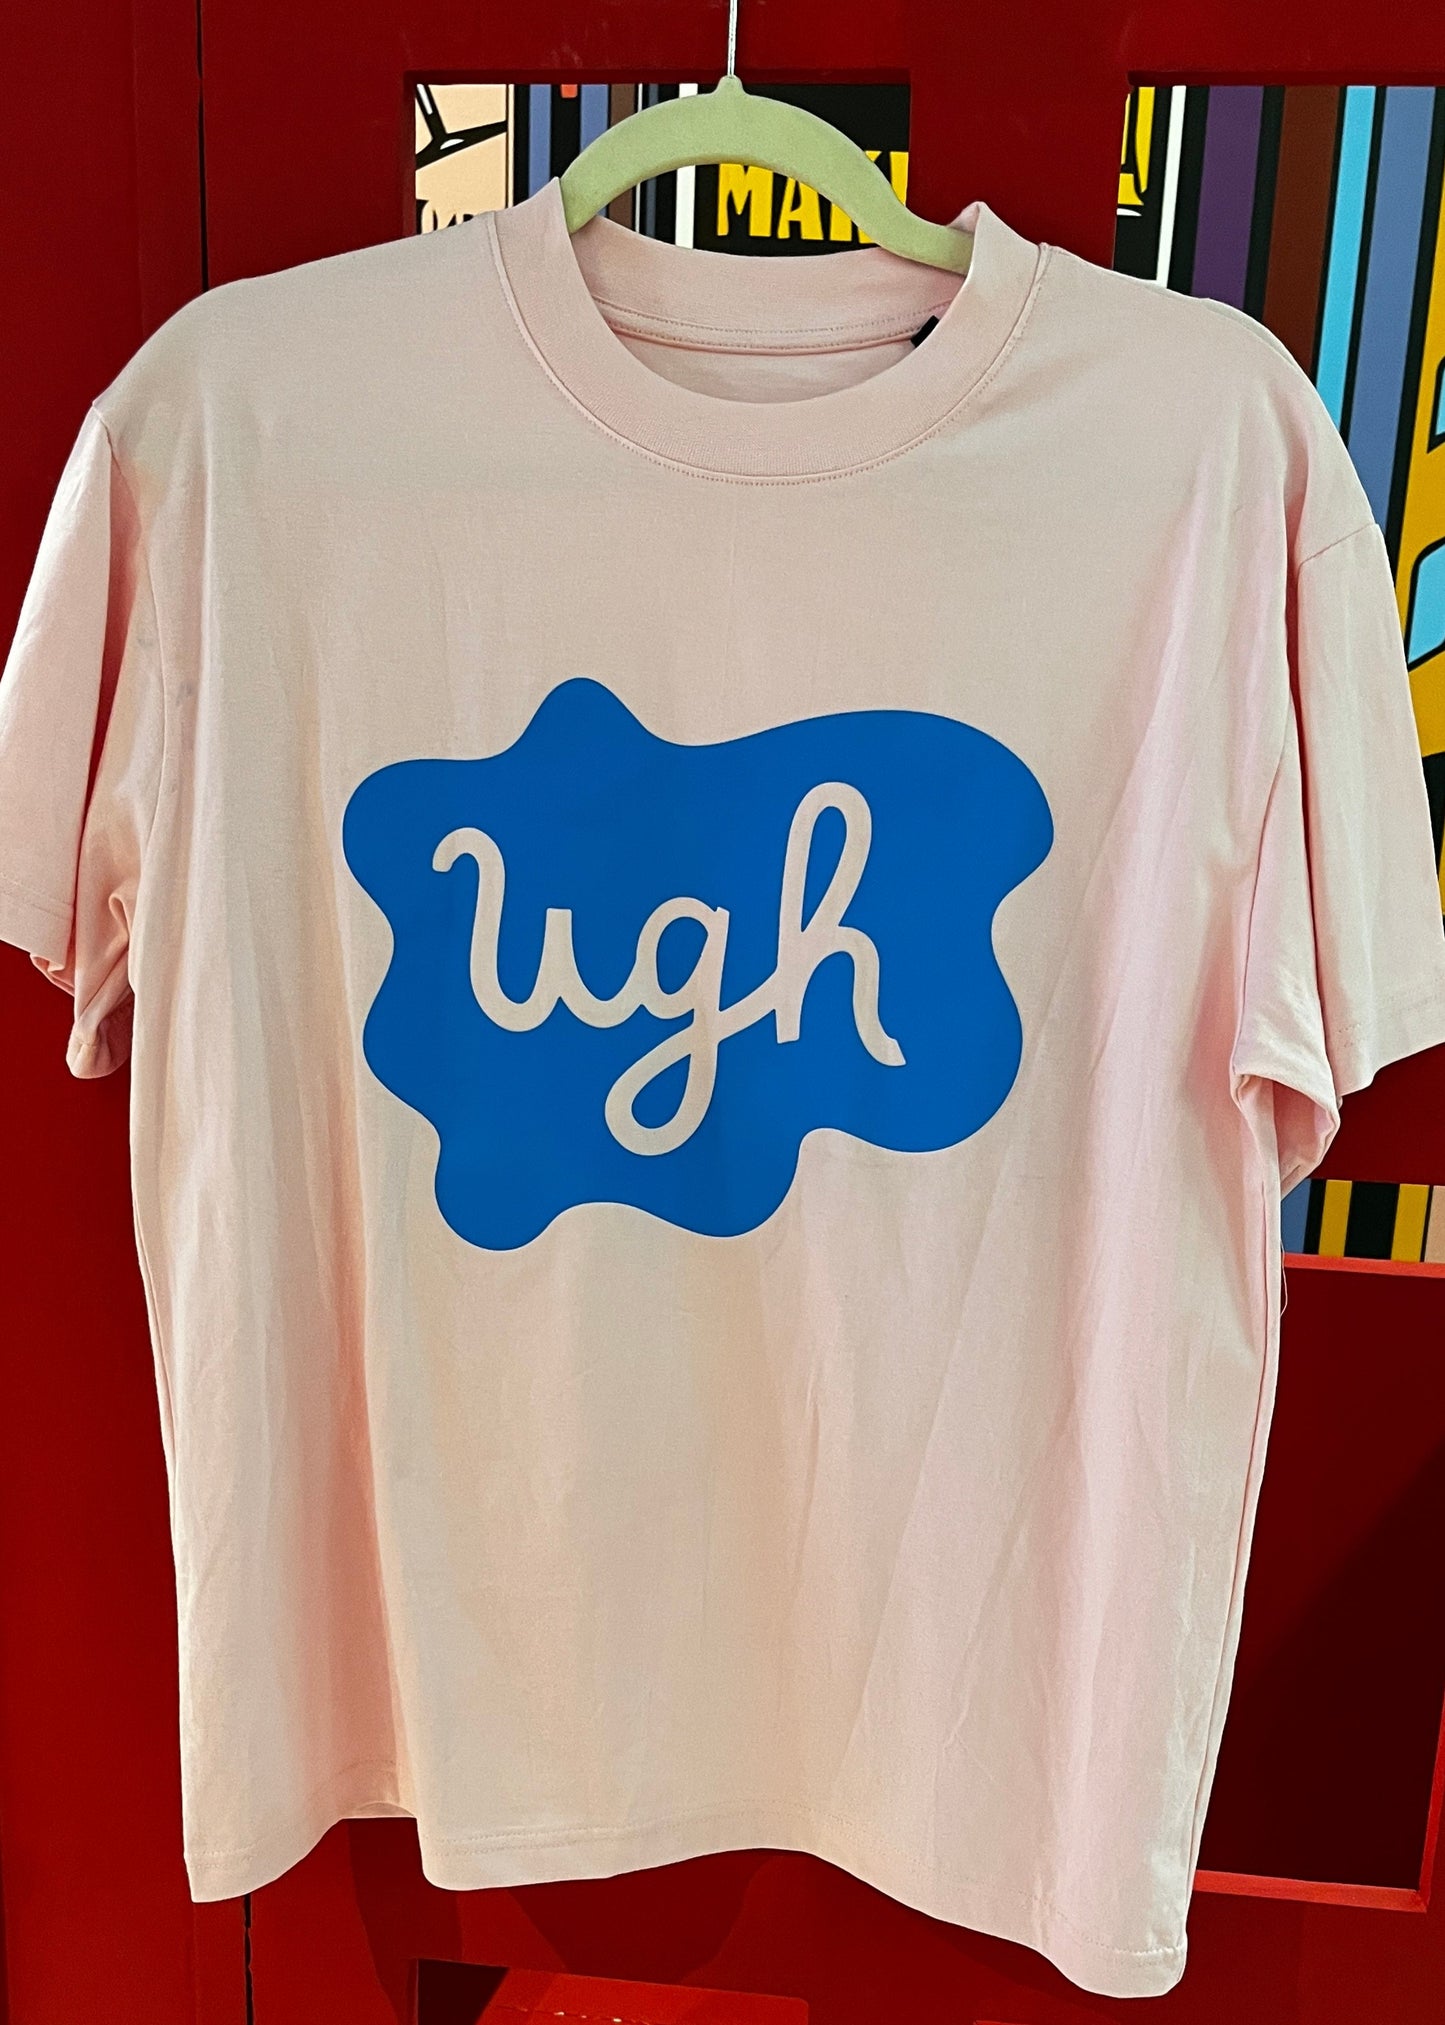 Ugh - Oversized Unisex T-Shirt